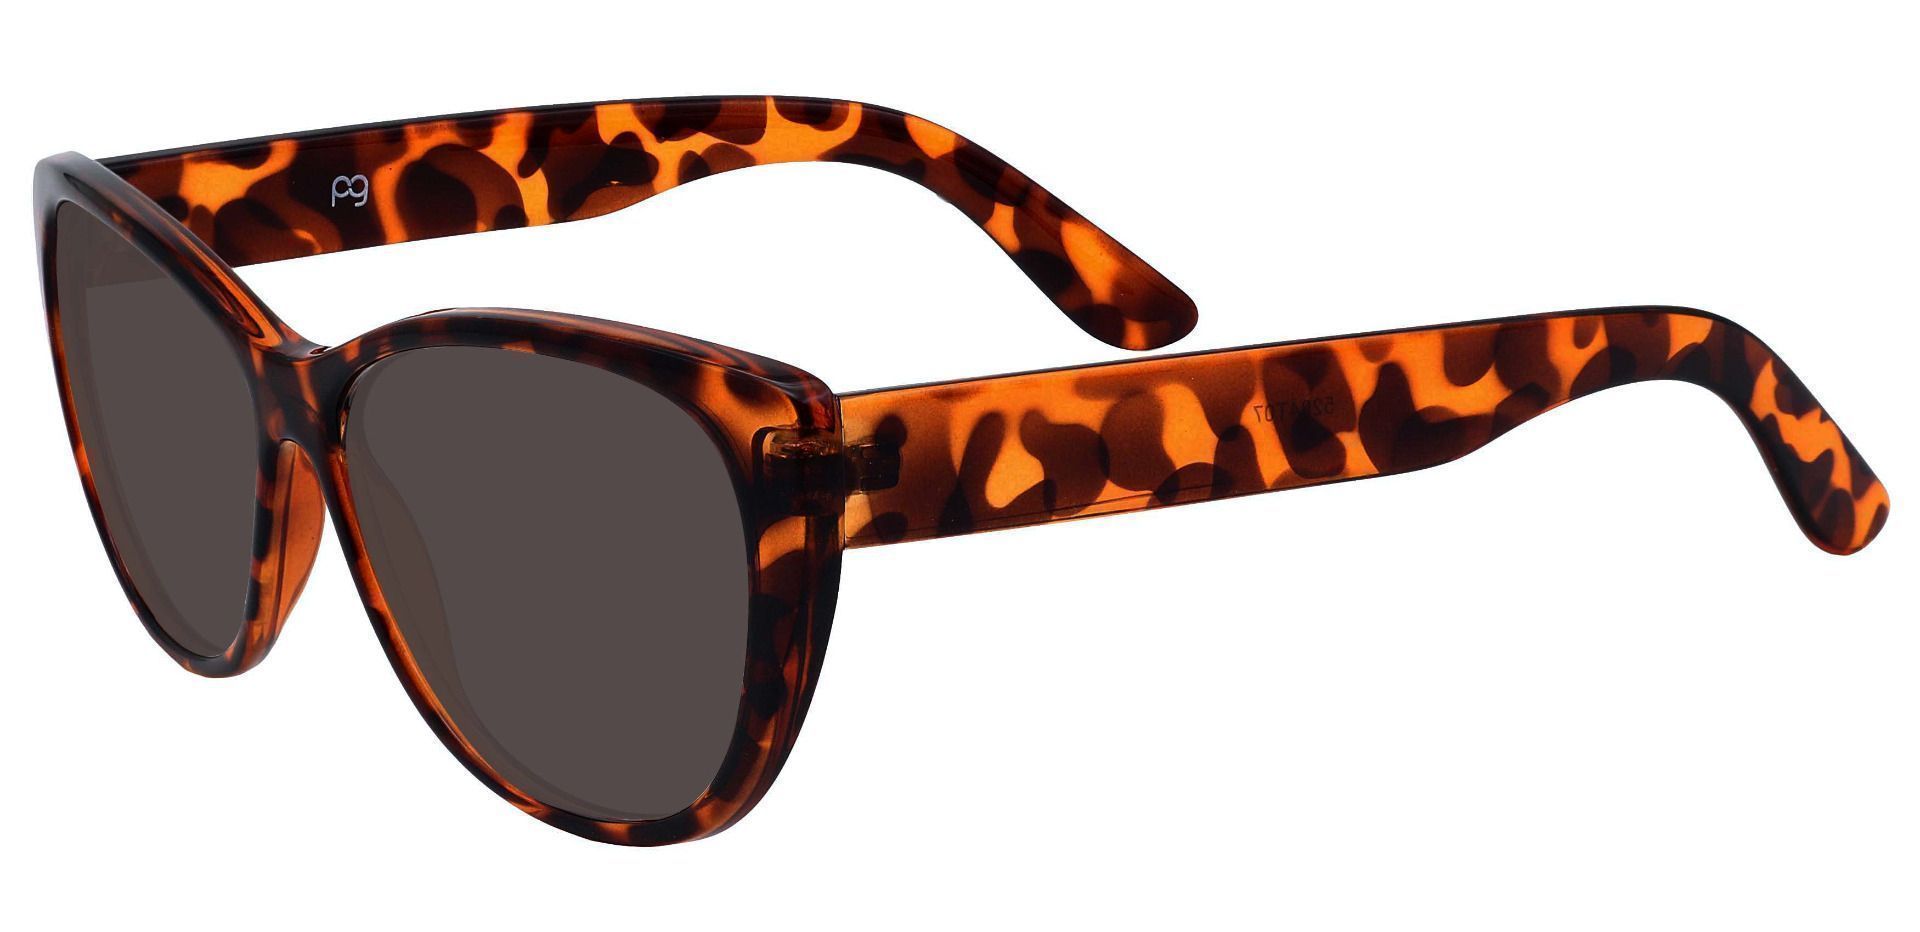 Lynn Cat-Eye Prescription Sunglasses - Tortoise Frame With Gray Lenses